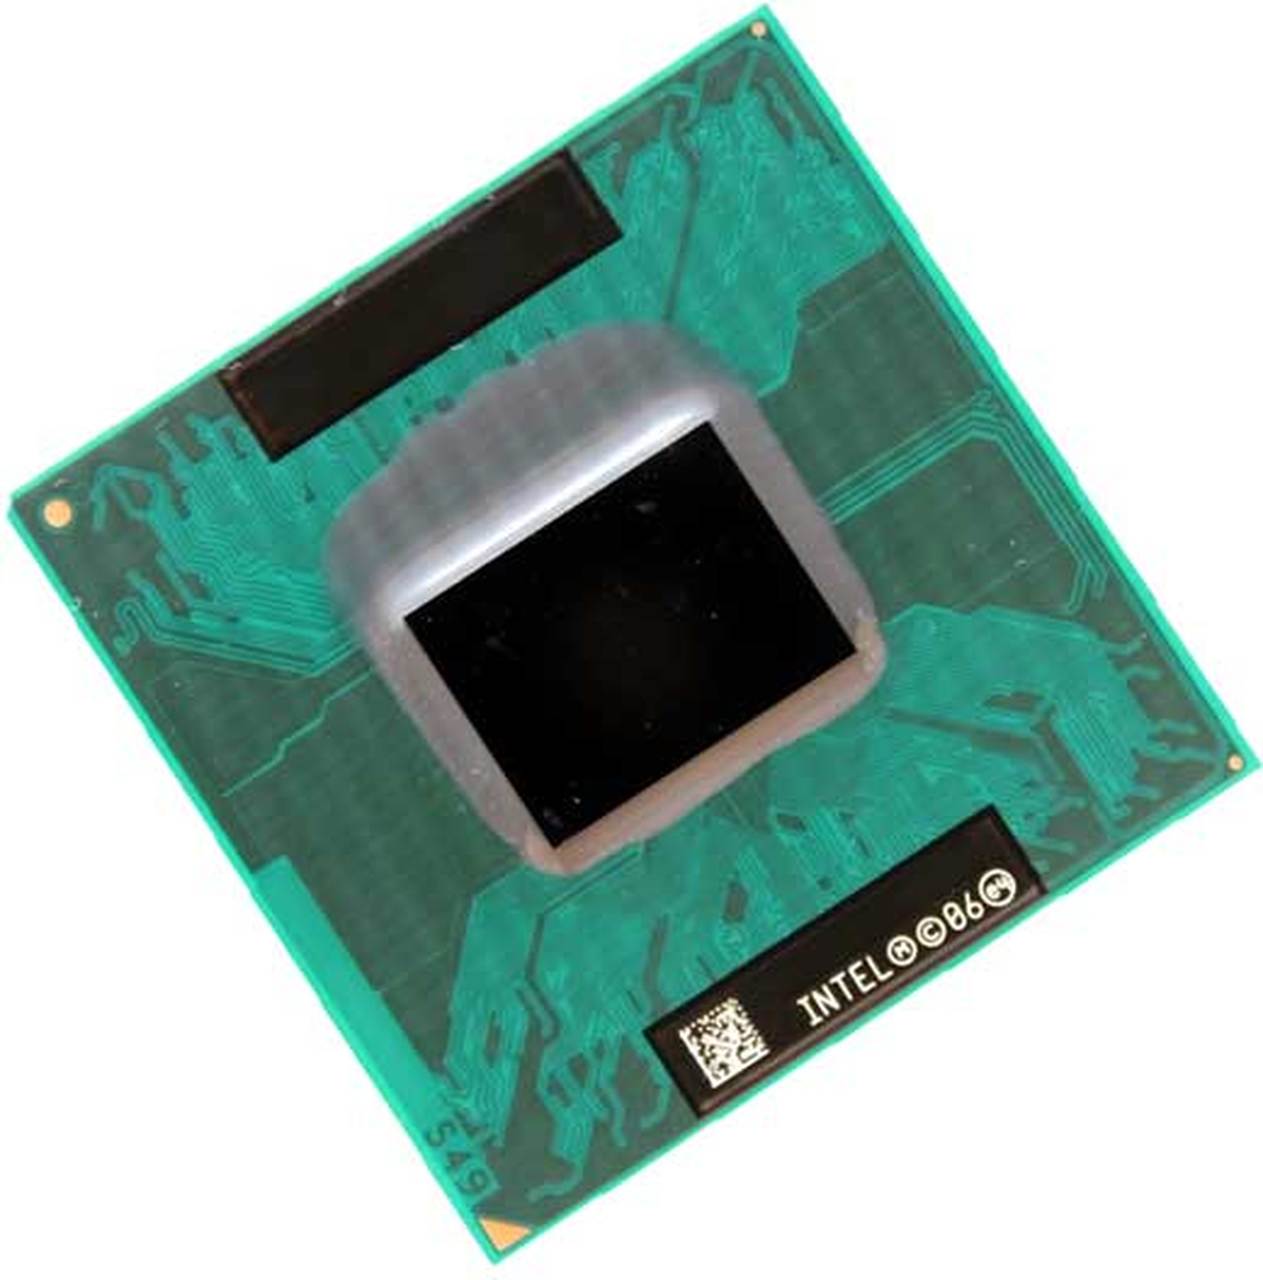 LF80538GF0342M | Intel Core Solo T1400 1 Core 1.83GHz PGA478 2 MB L2 Processor